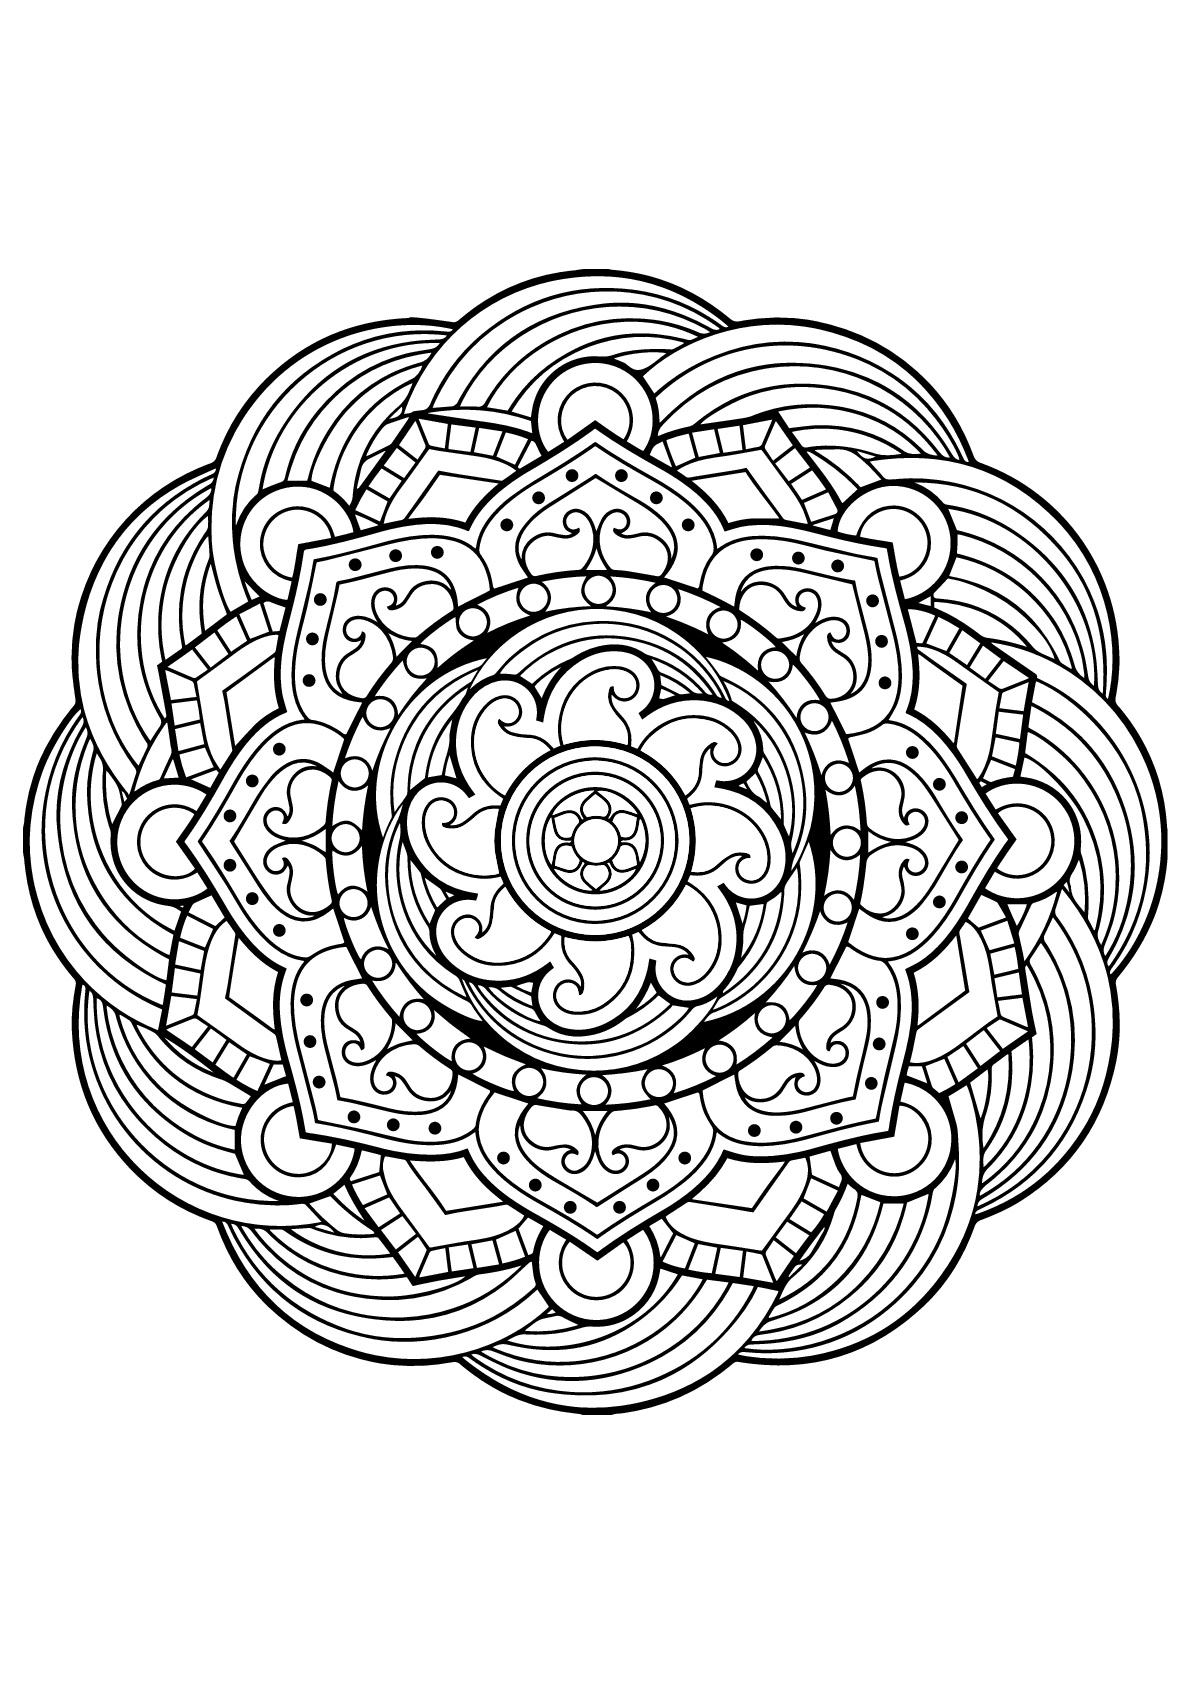 Mandala Complexe Livre Gratuit 5 - Coloriage Mandalas - Coloriages Pour serapportantà Mandalas A Colorier 